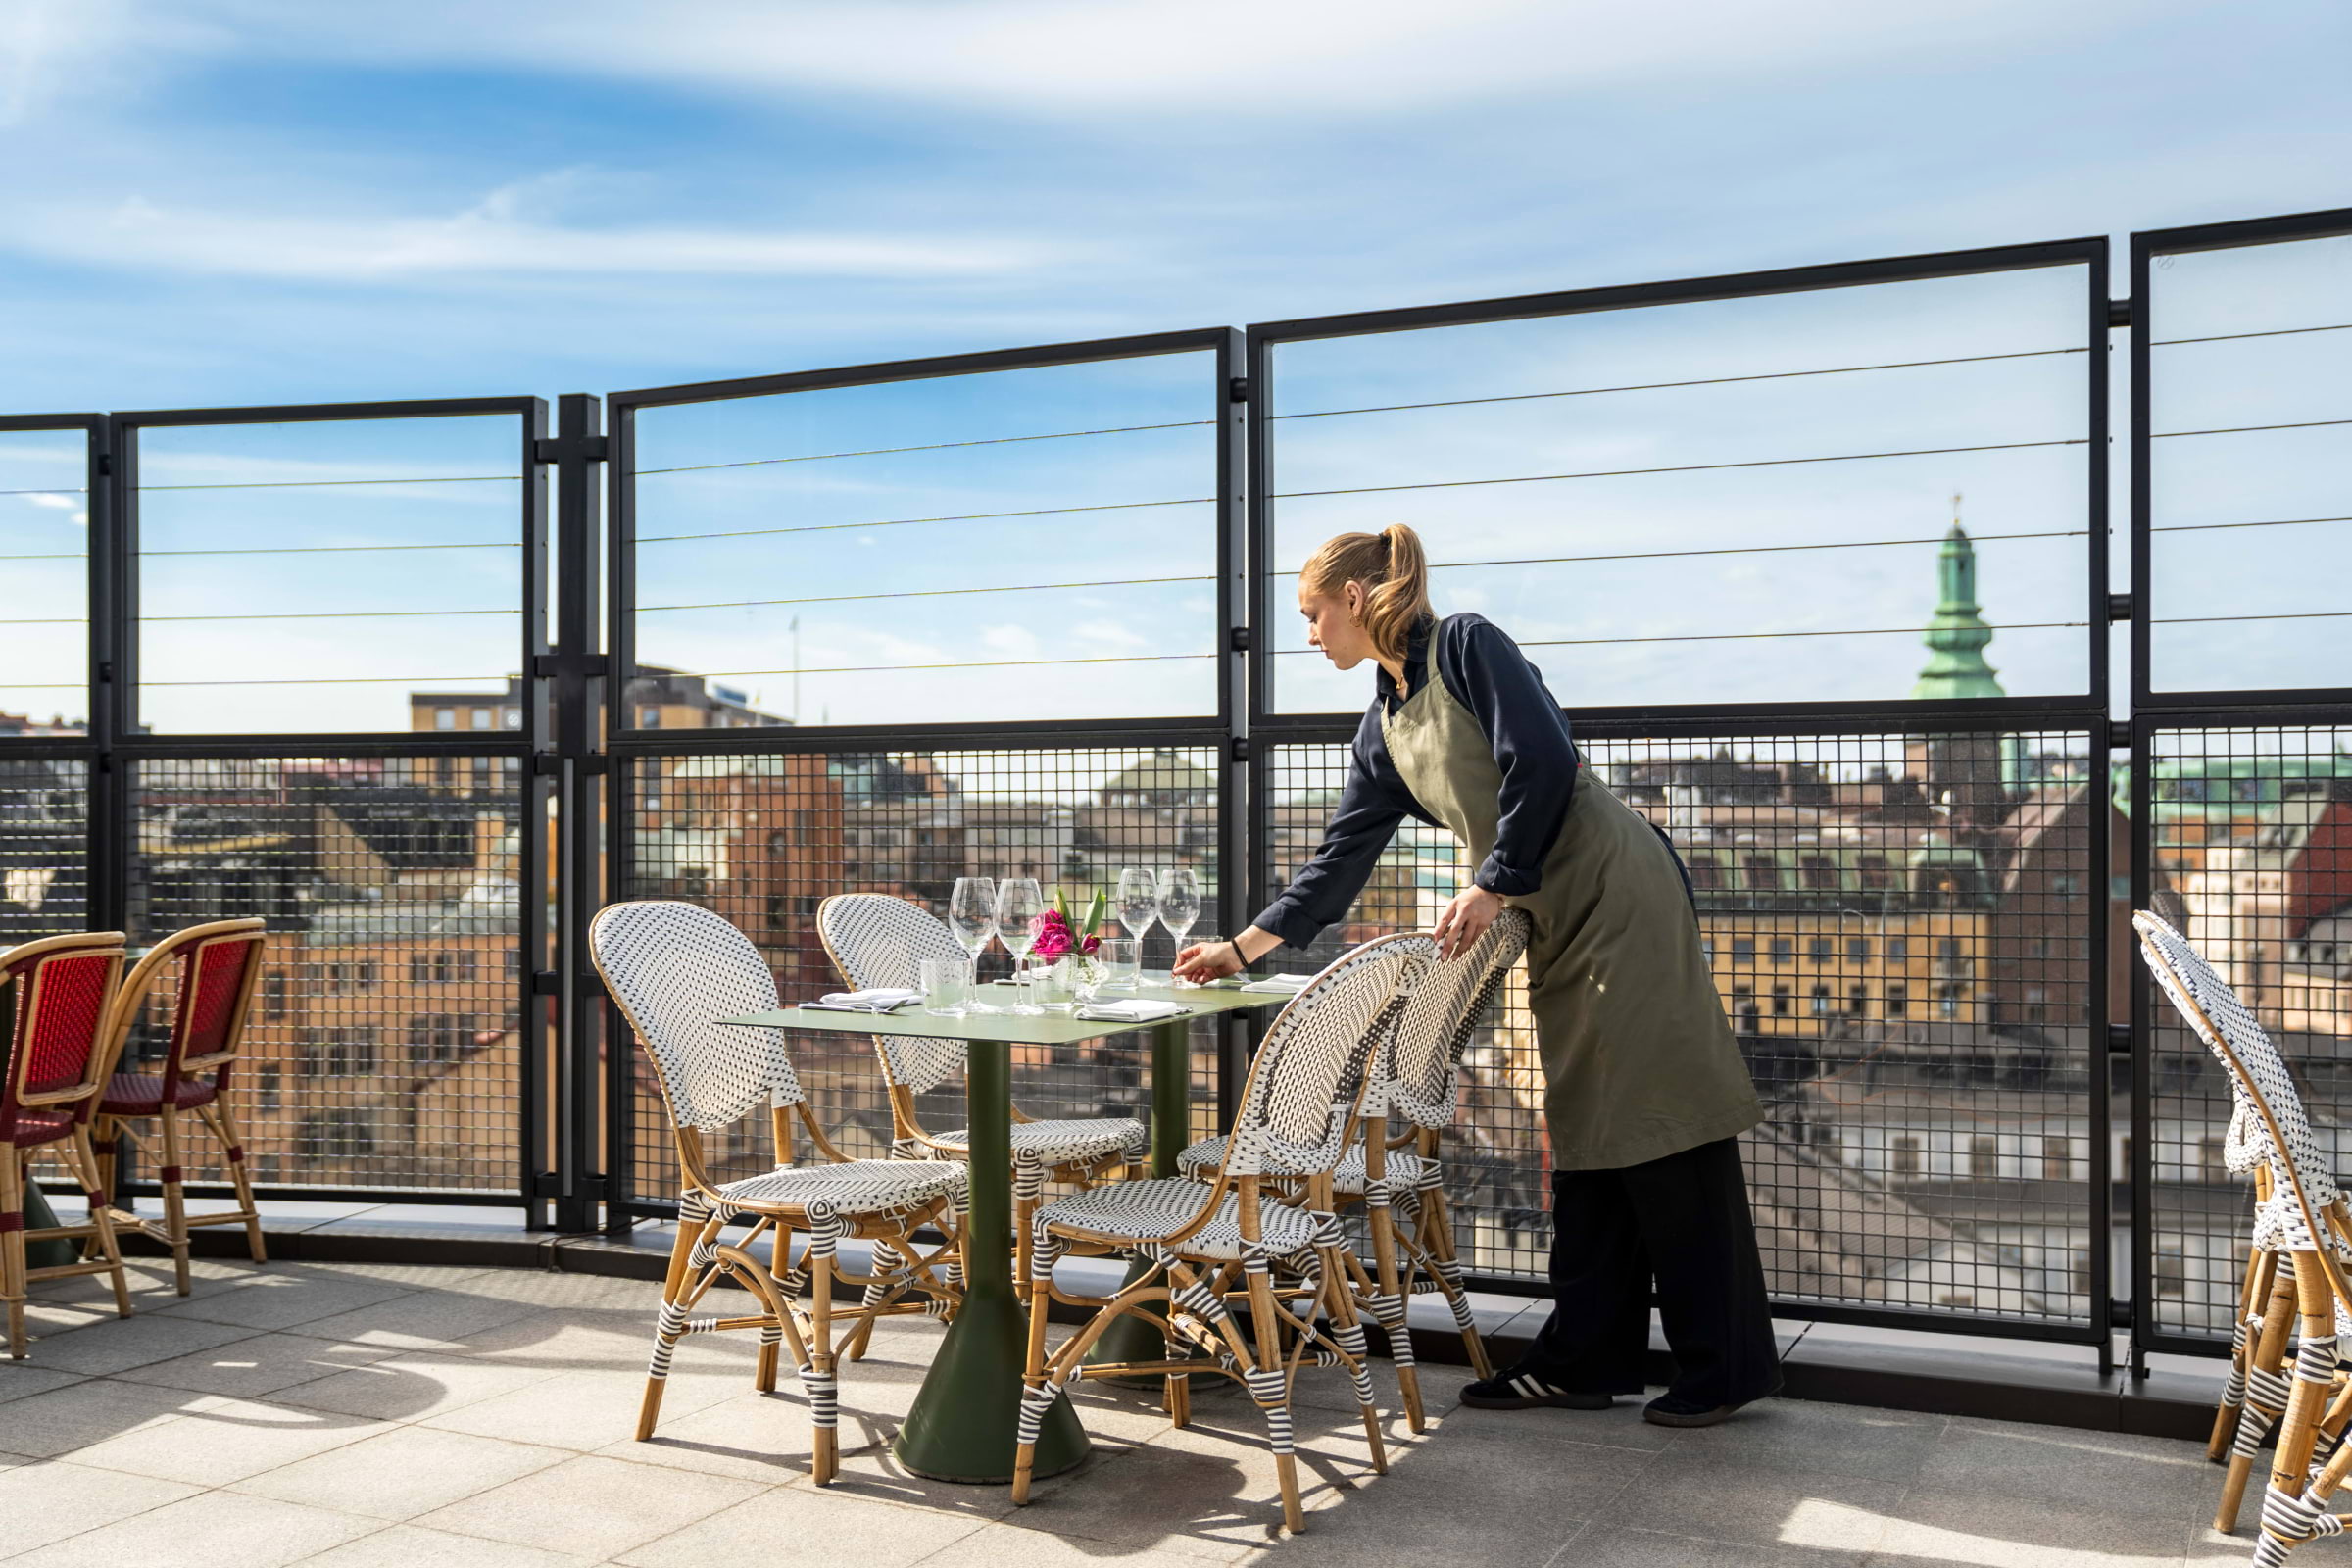 Tolv våningar upp bjuder Gondolens nya uteservering på utsikt över Stockholm. Foto: pressbild